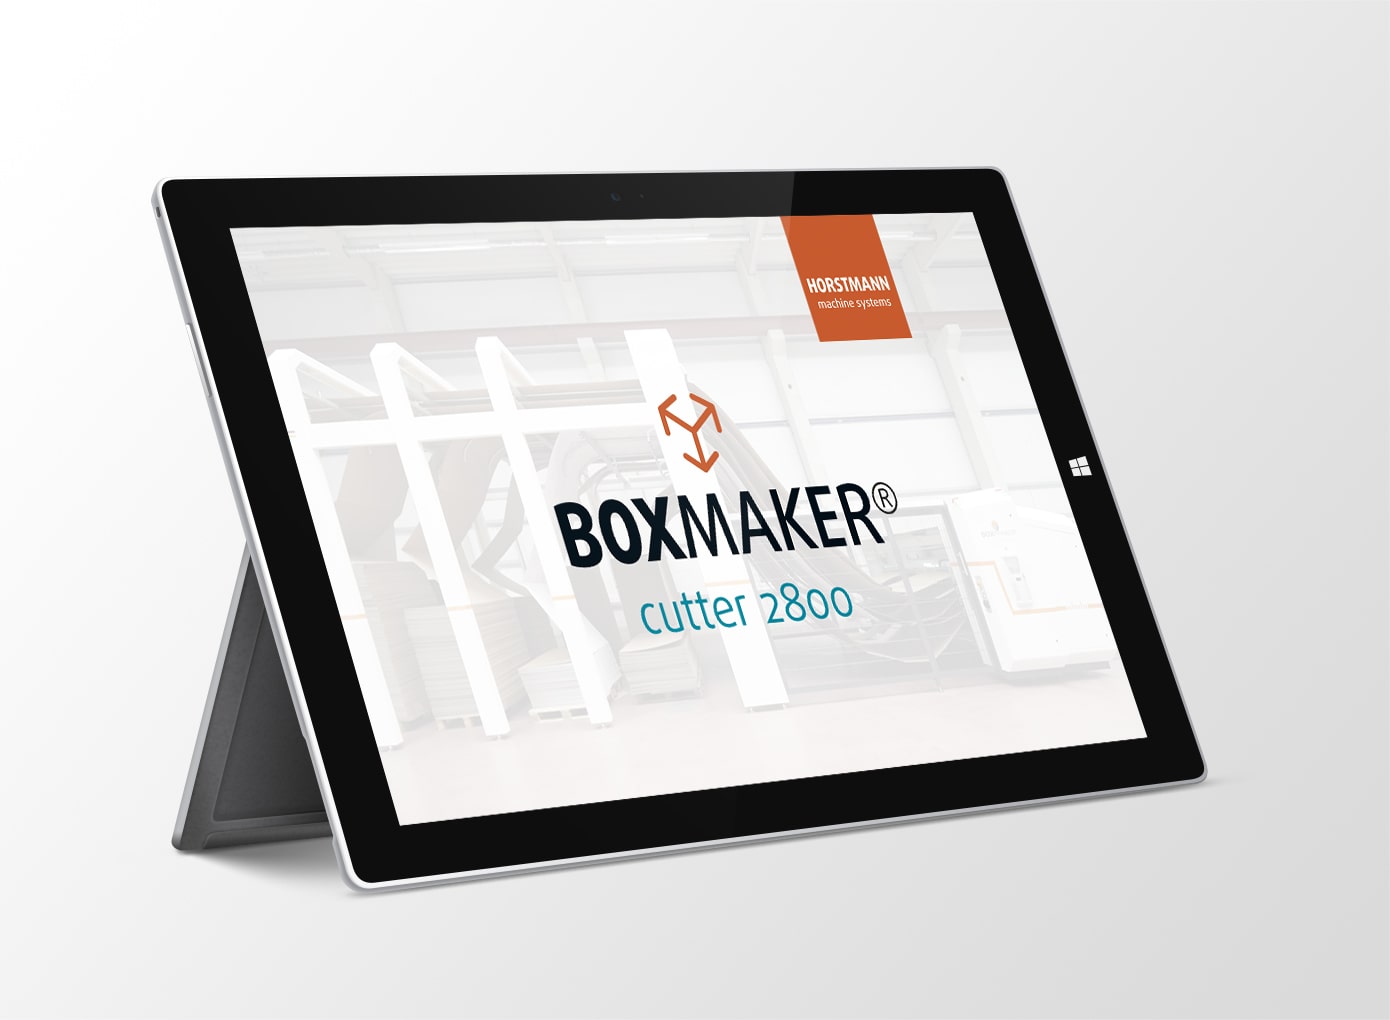 Mockup von einem iPad mit dem Boxmaker Logo